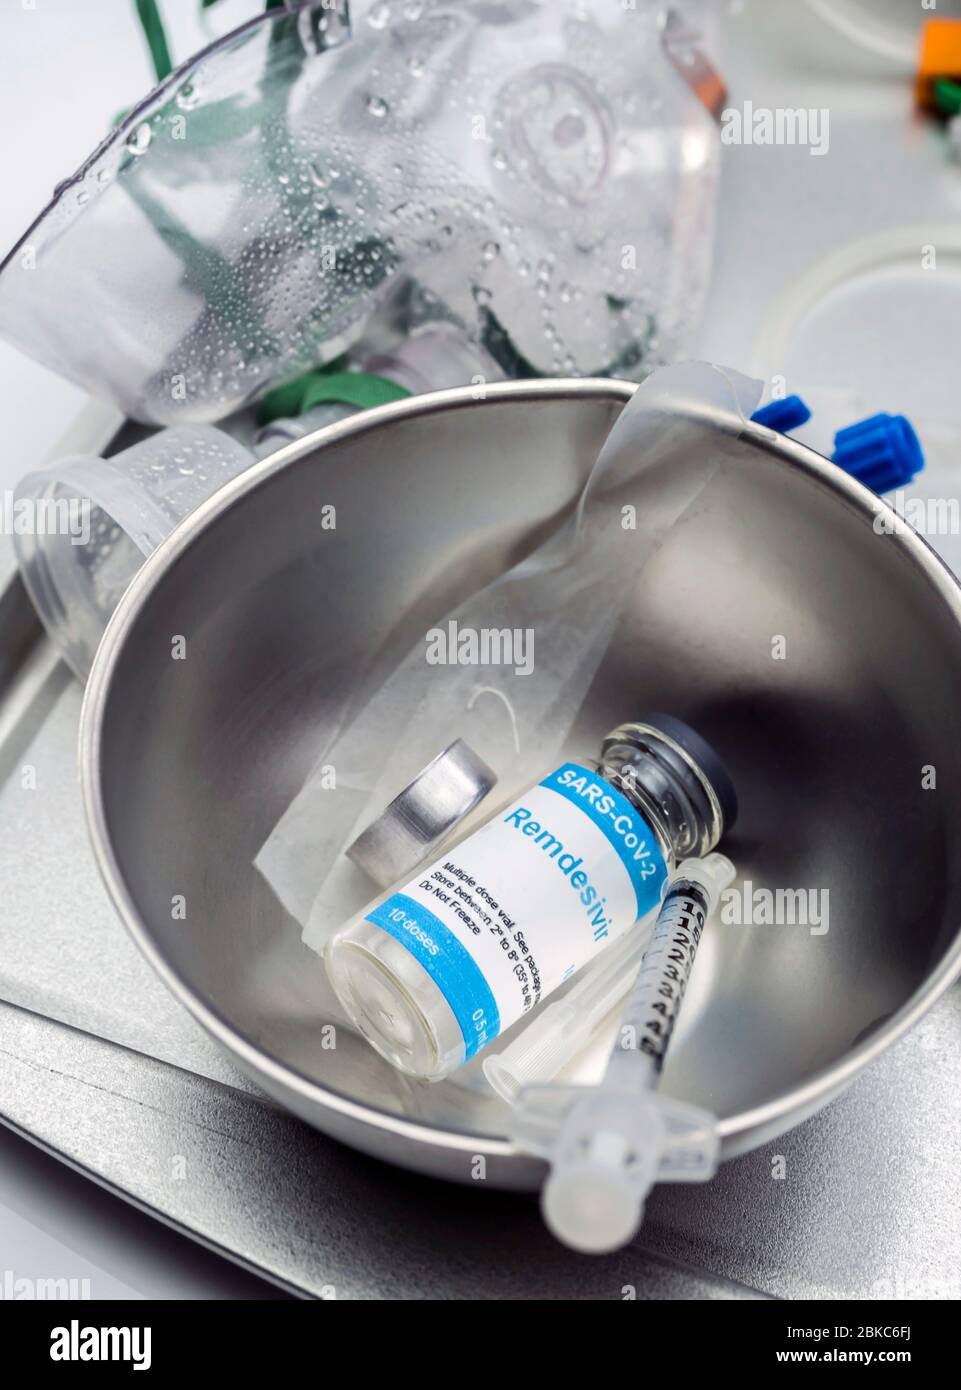 Medikamente mit Redemsivir antivirale Medikament bei Patienten mit sars-Cov-2 infiziert, konzeptionelle Idee Stockfoto